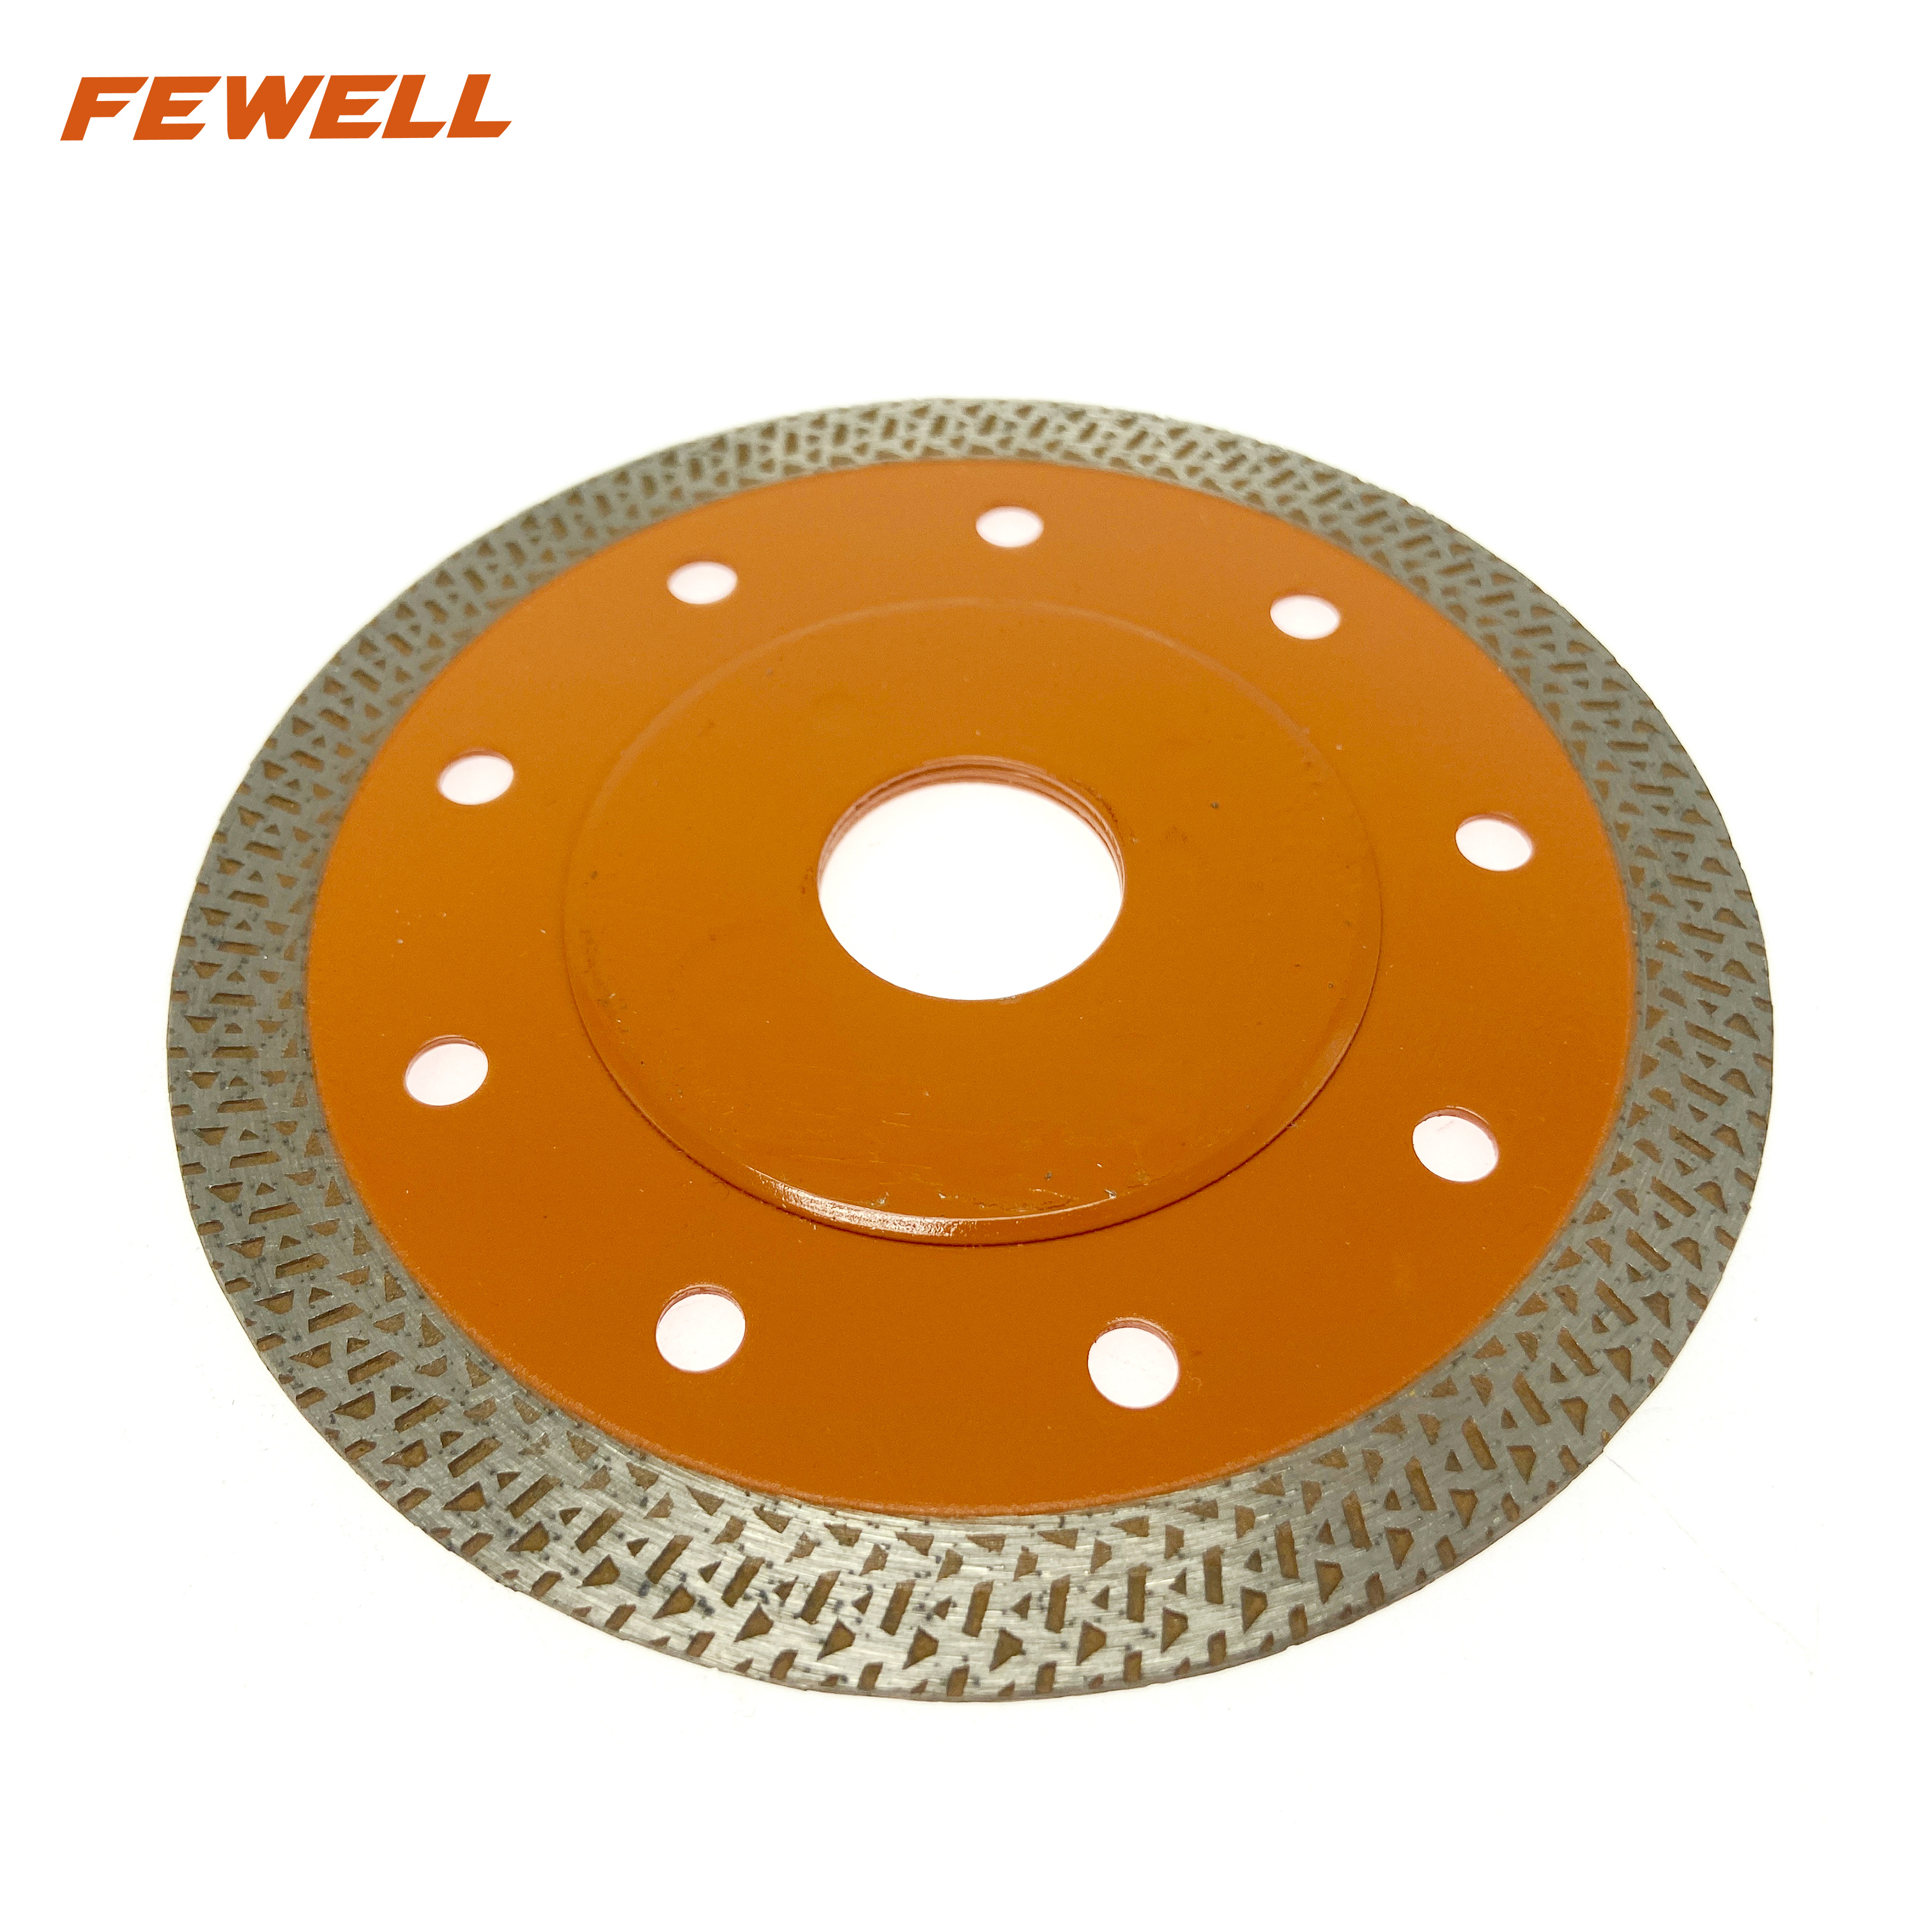 Горячий пресс 4,5 дюйма 115*10*22,23 мм супер ультратонкий алмазный пильный диск турбо диск для резки керамической плитки фарфора